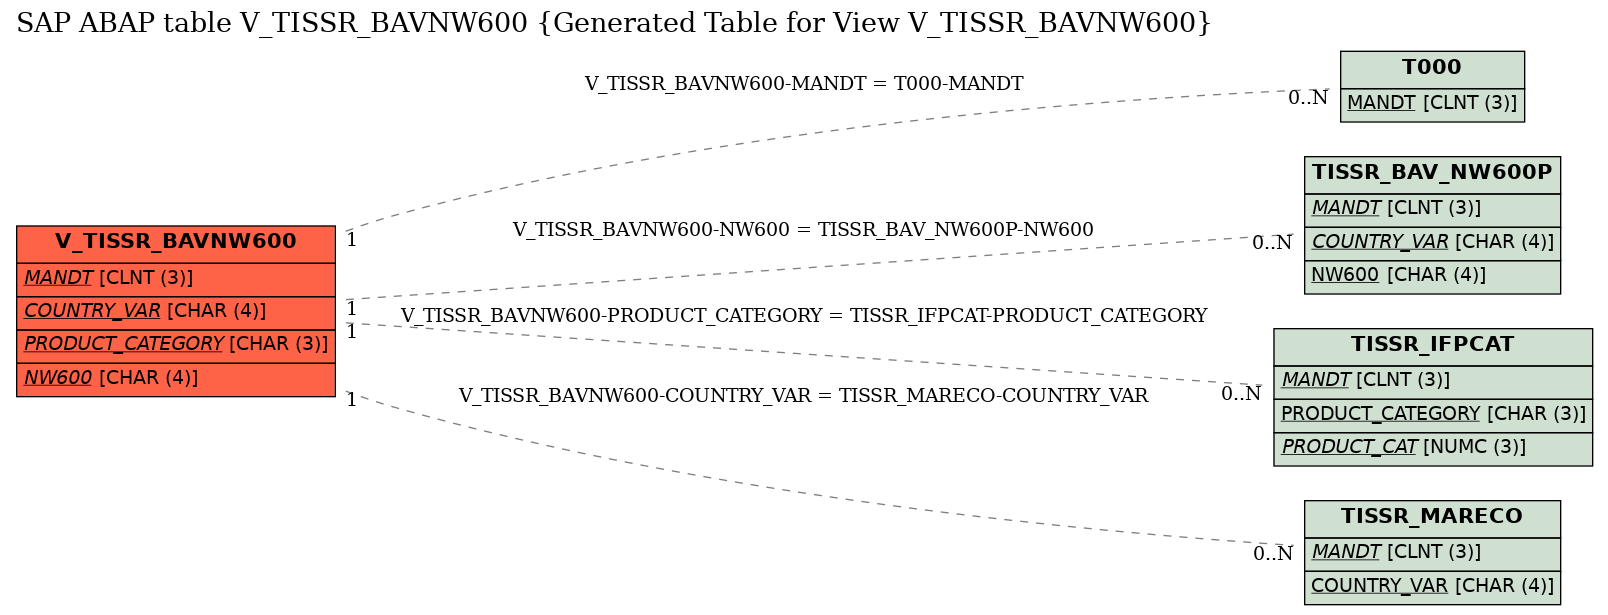 E-R Diagram for table V_TISSR_BAVNW600 (Generated Table for View V_TISSR_BAVNW600)